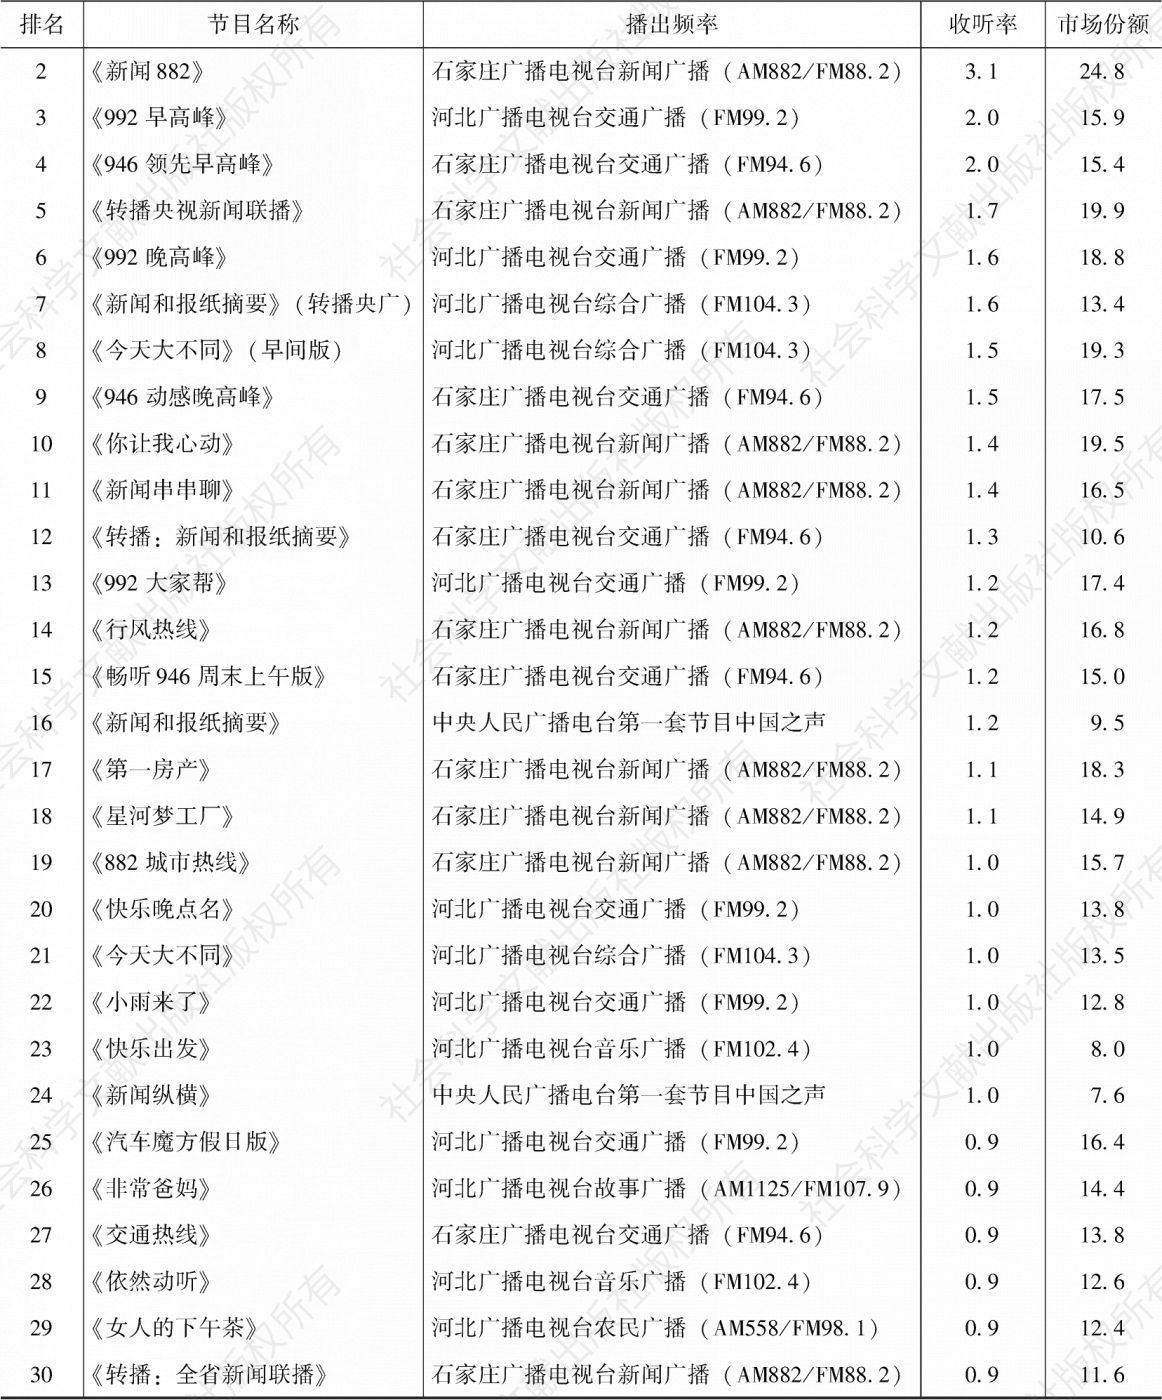 表4.19.7 2020年石家庄市场收听率排名前30的节目-续表